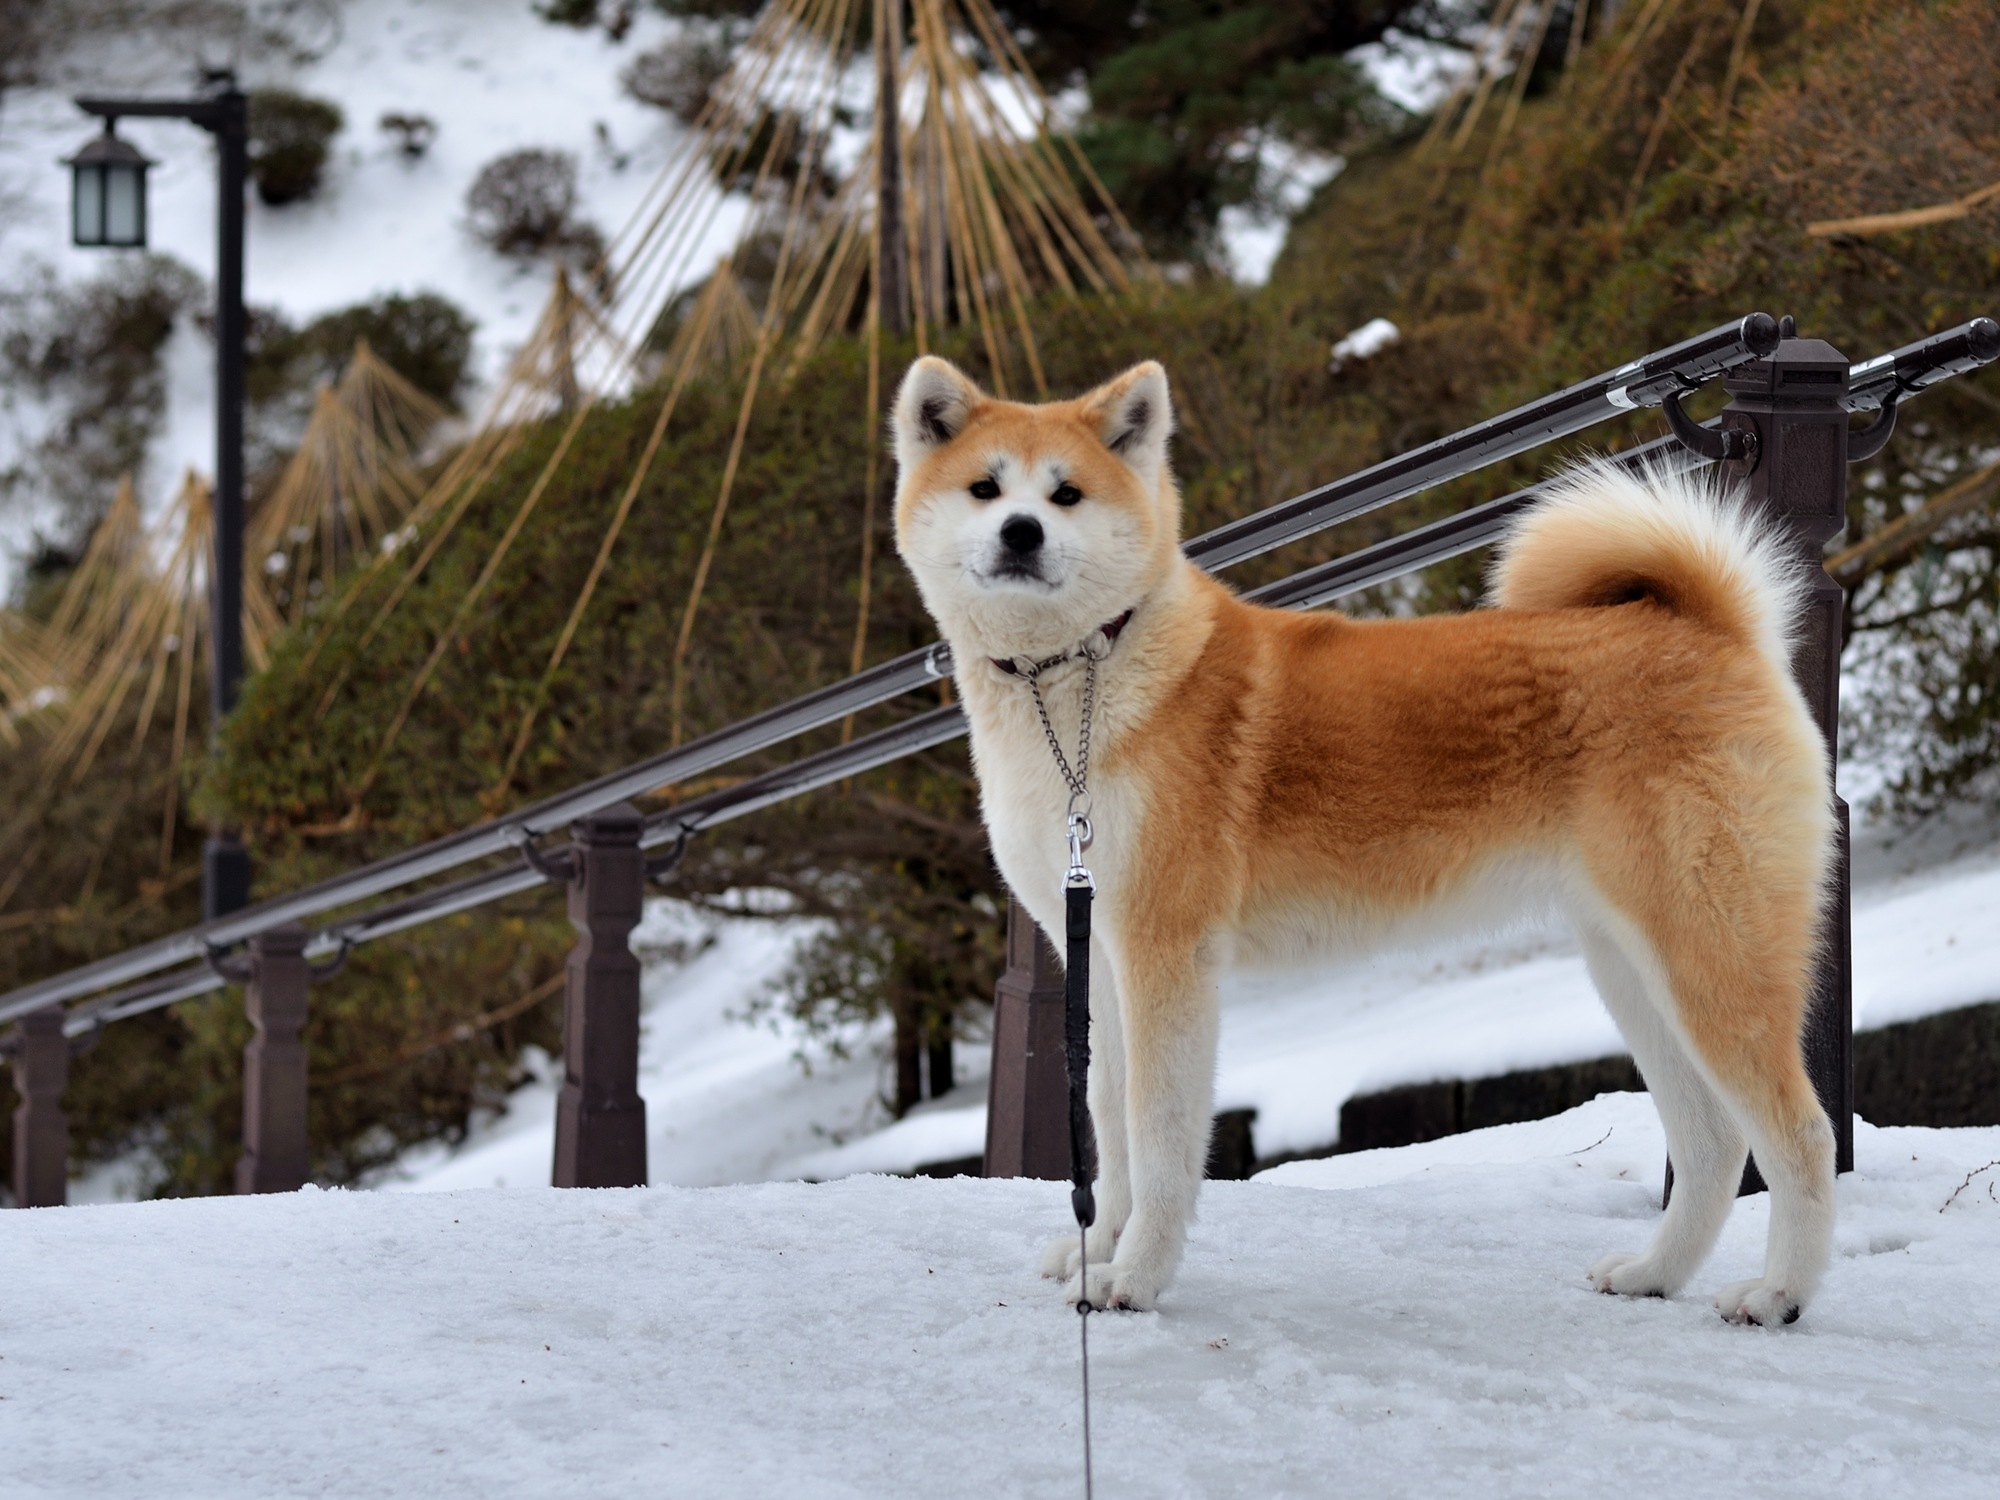 愛犬と冬の秋田へ たくさんのワンちゃんで盛り上がる 犬っこまつり19 田沢湖や角館の散策 横手の雪まつり19 愛犬との旅行ならイヌトミィ